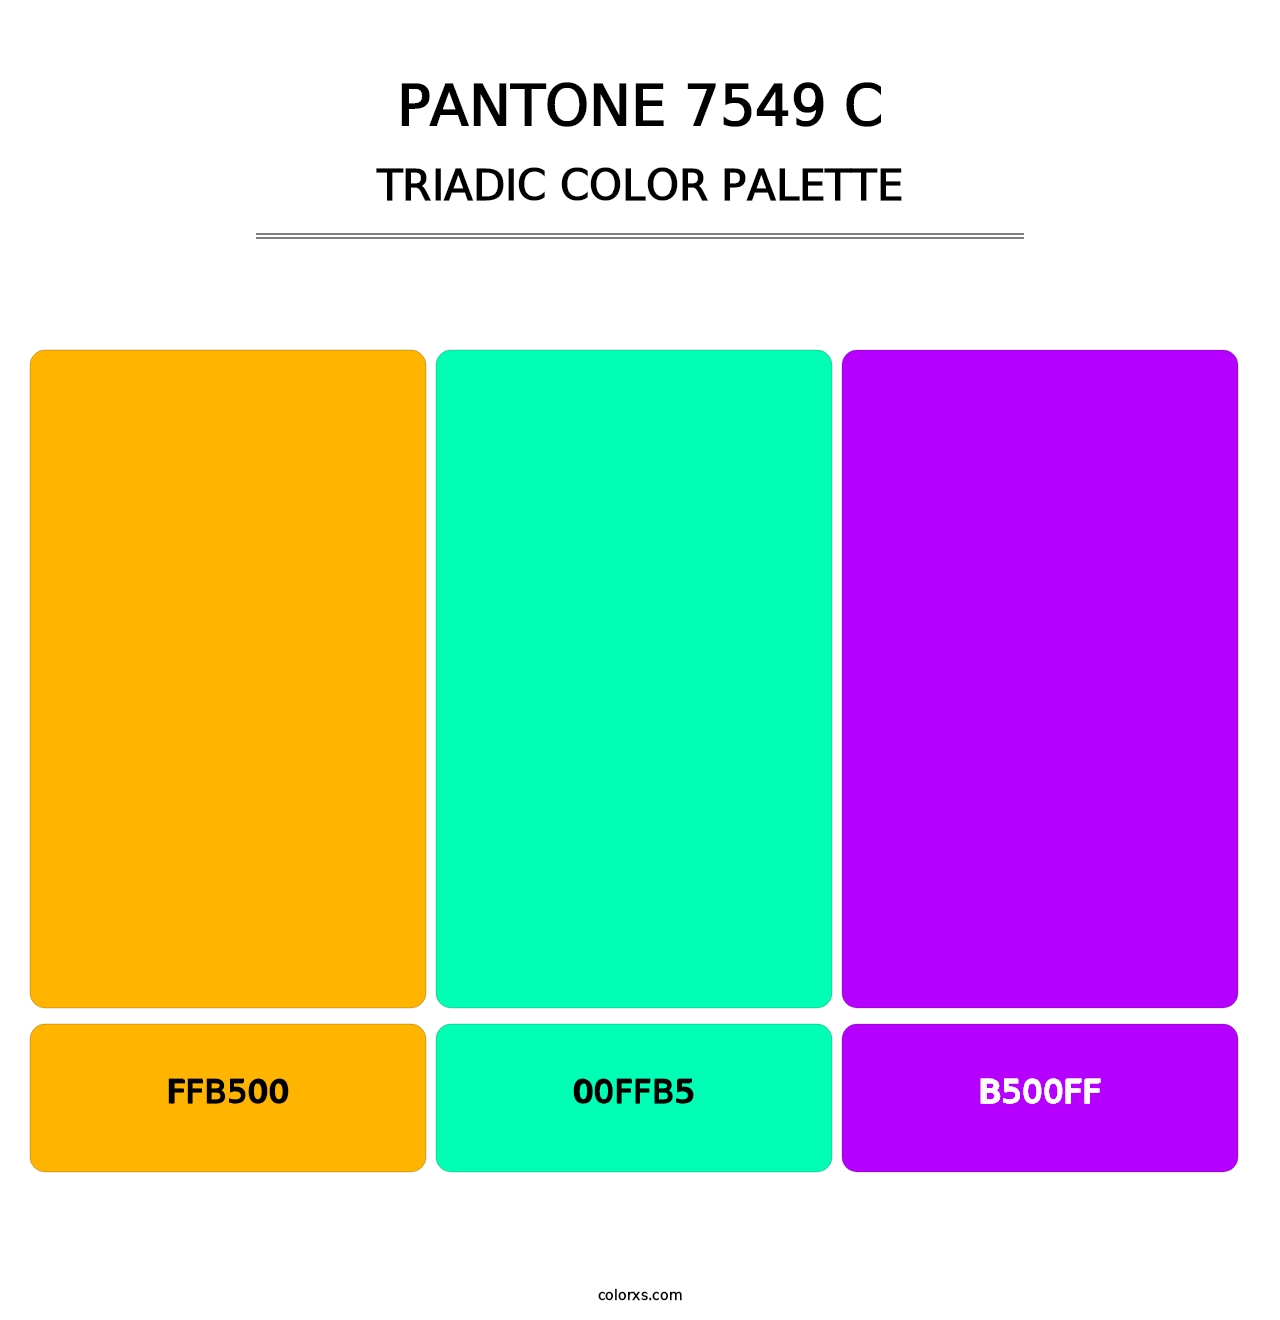 PANTONE 7549 C - Triadic Color Palette